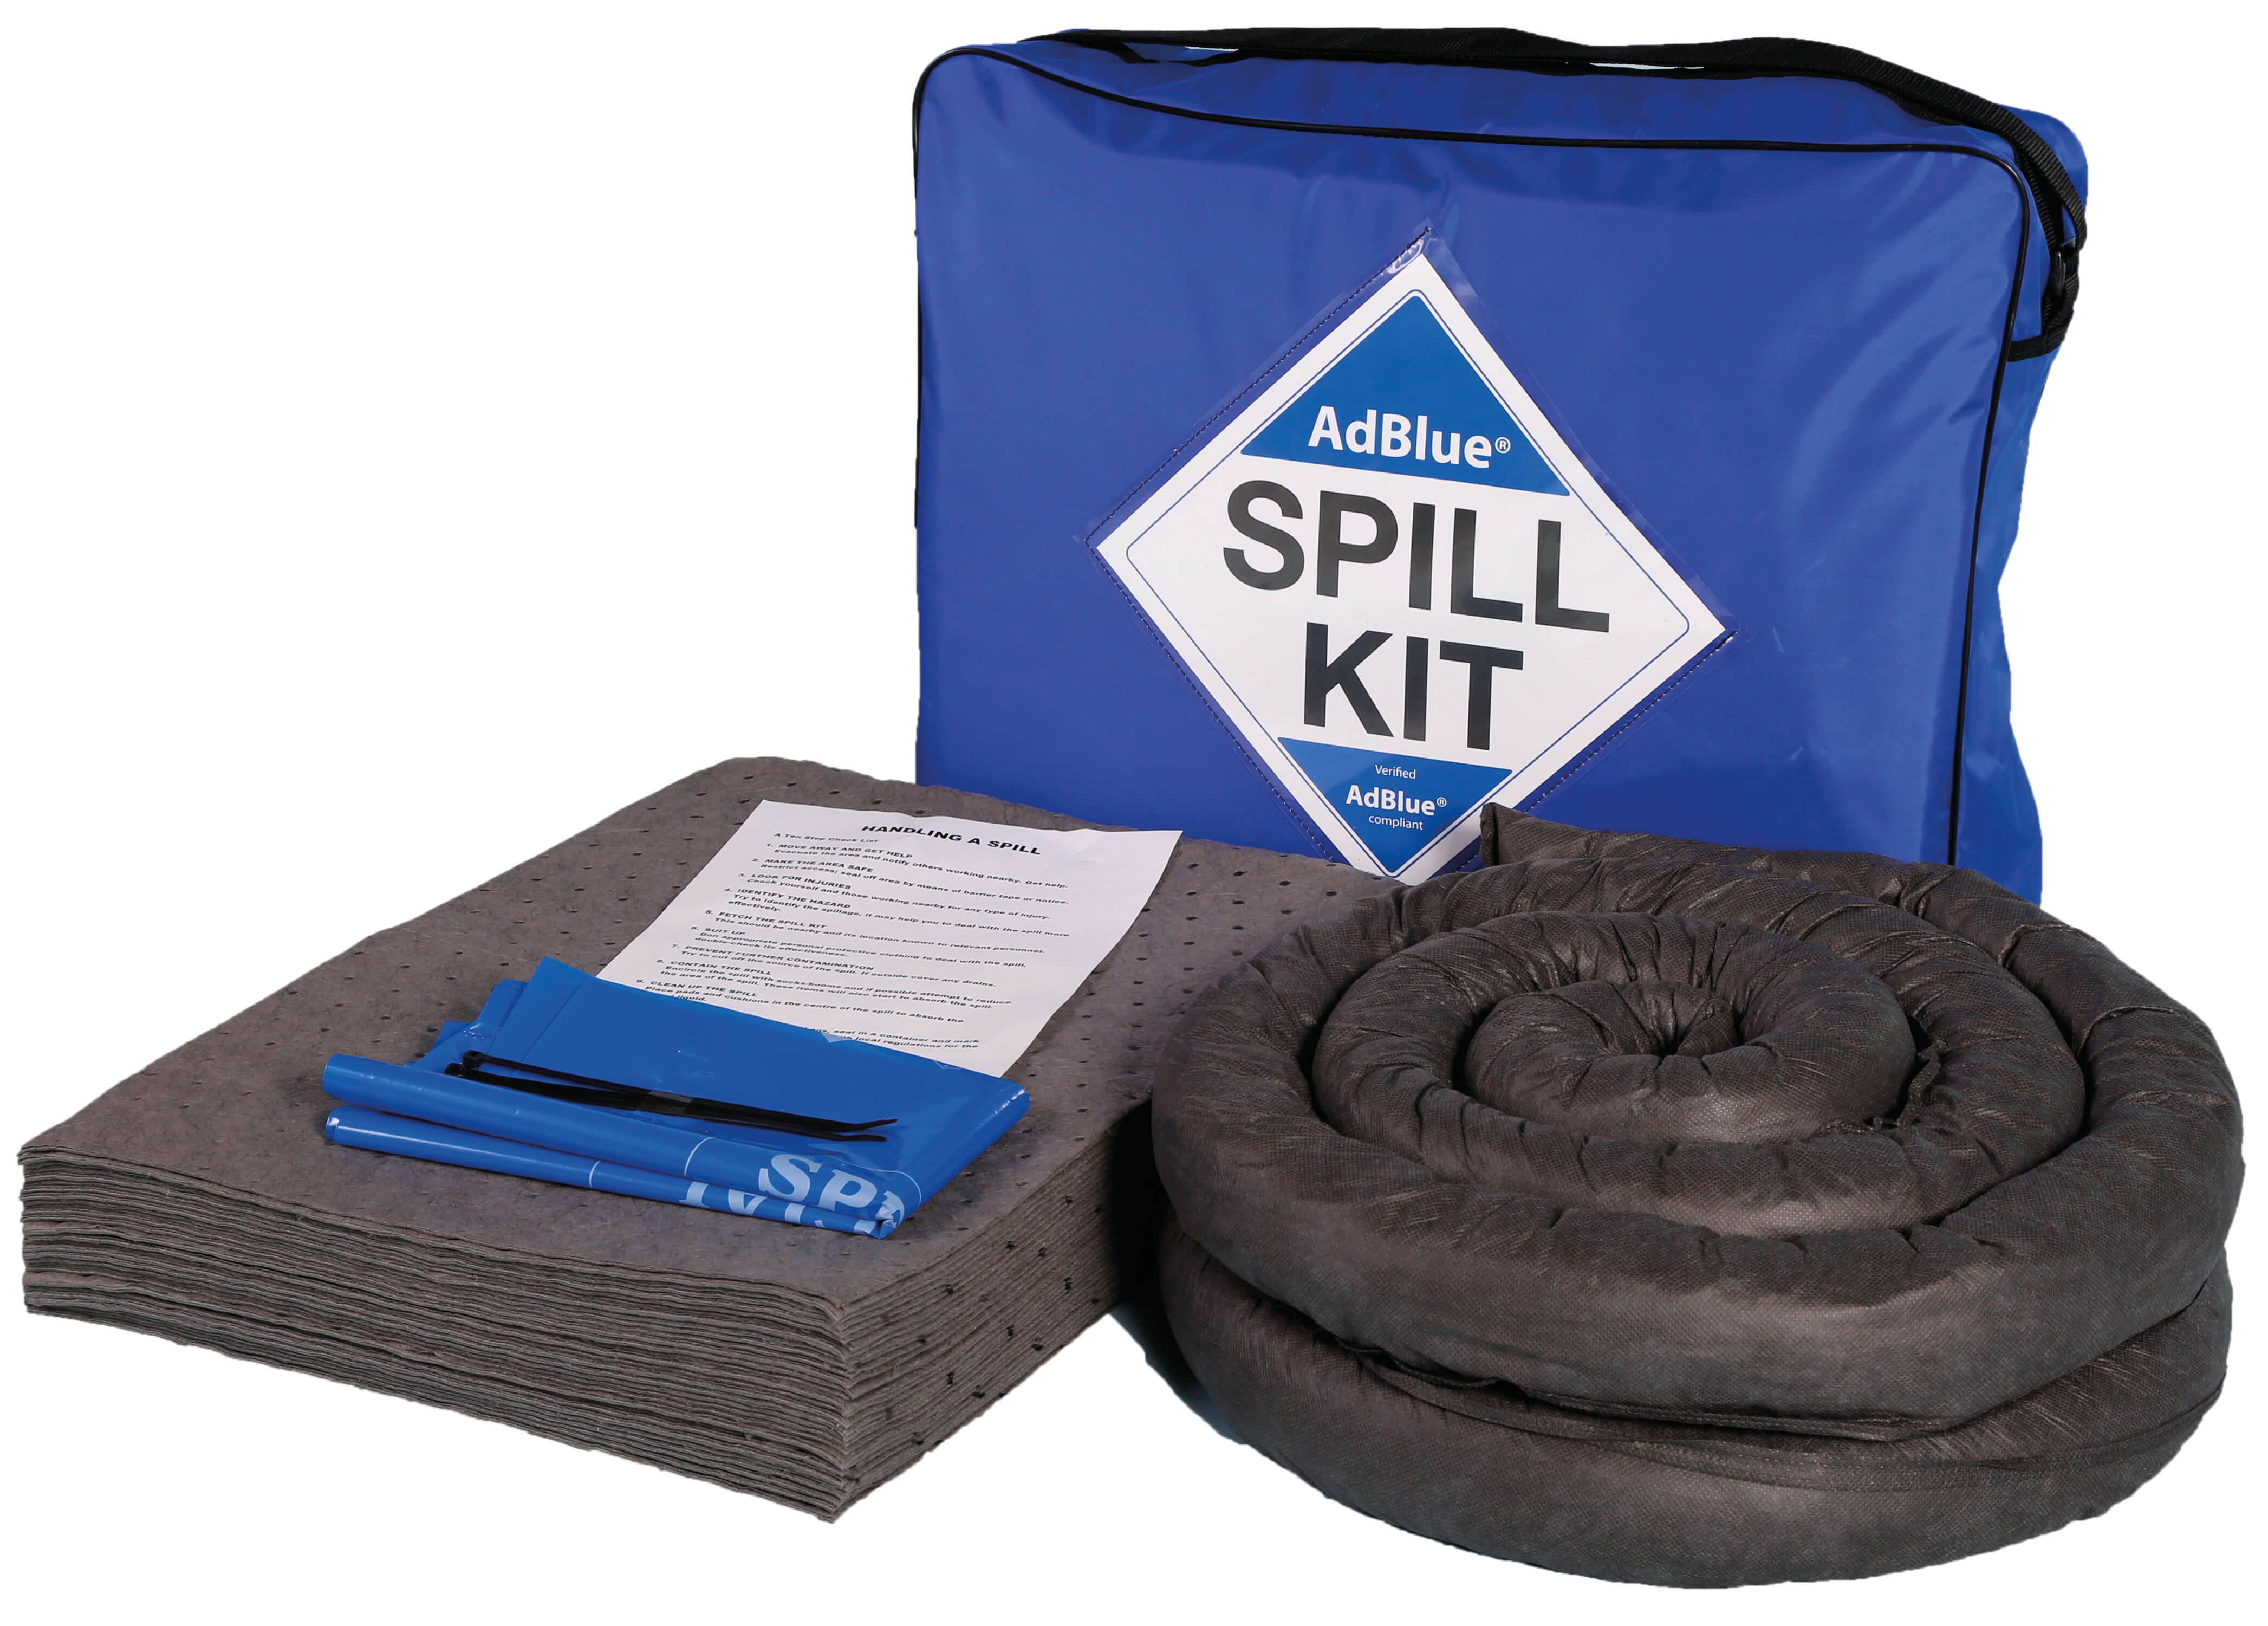 50 litre AdBlue spill kit in blue shoulder bag